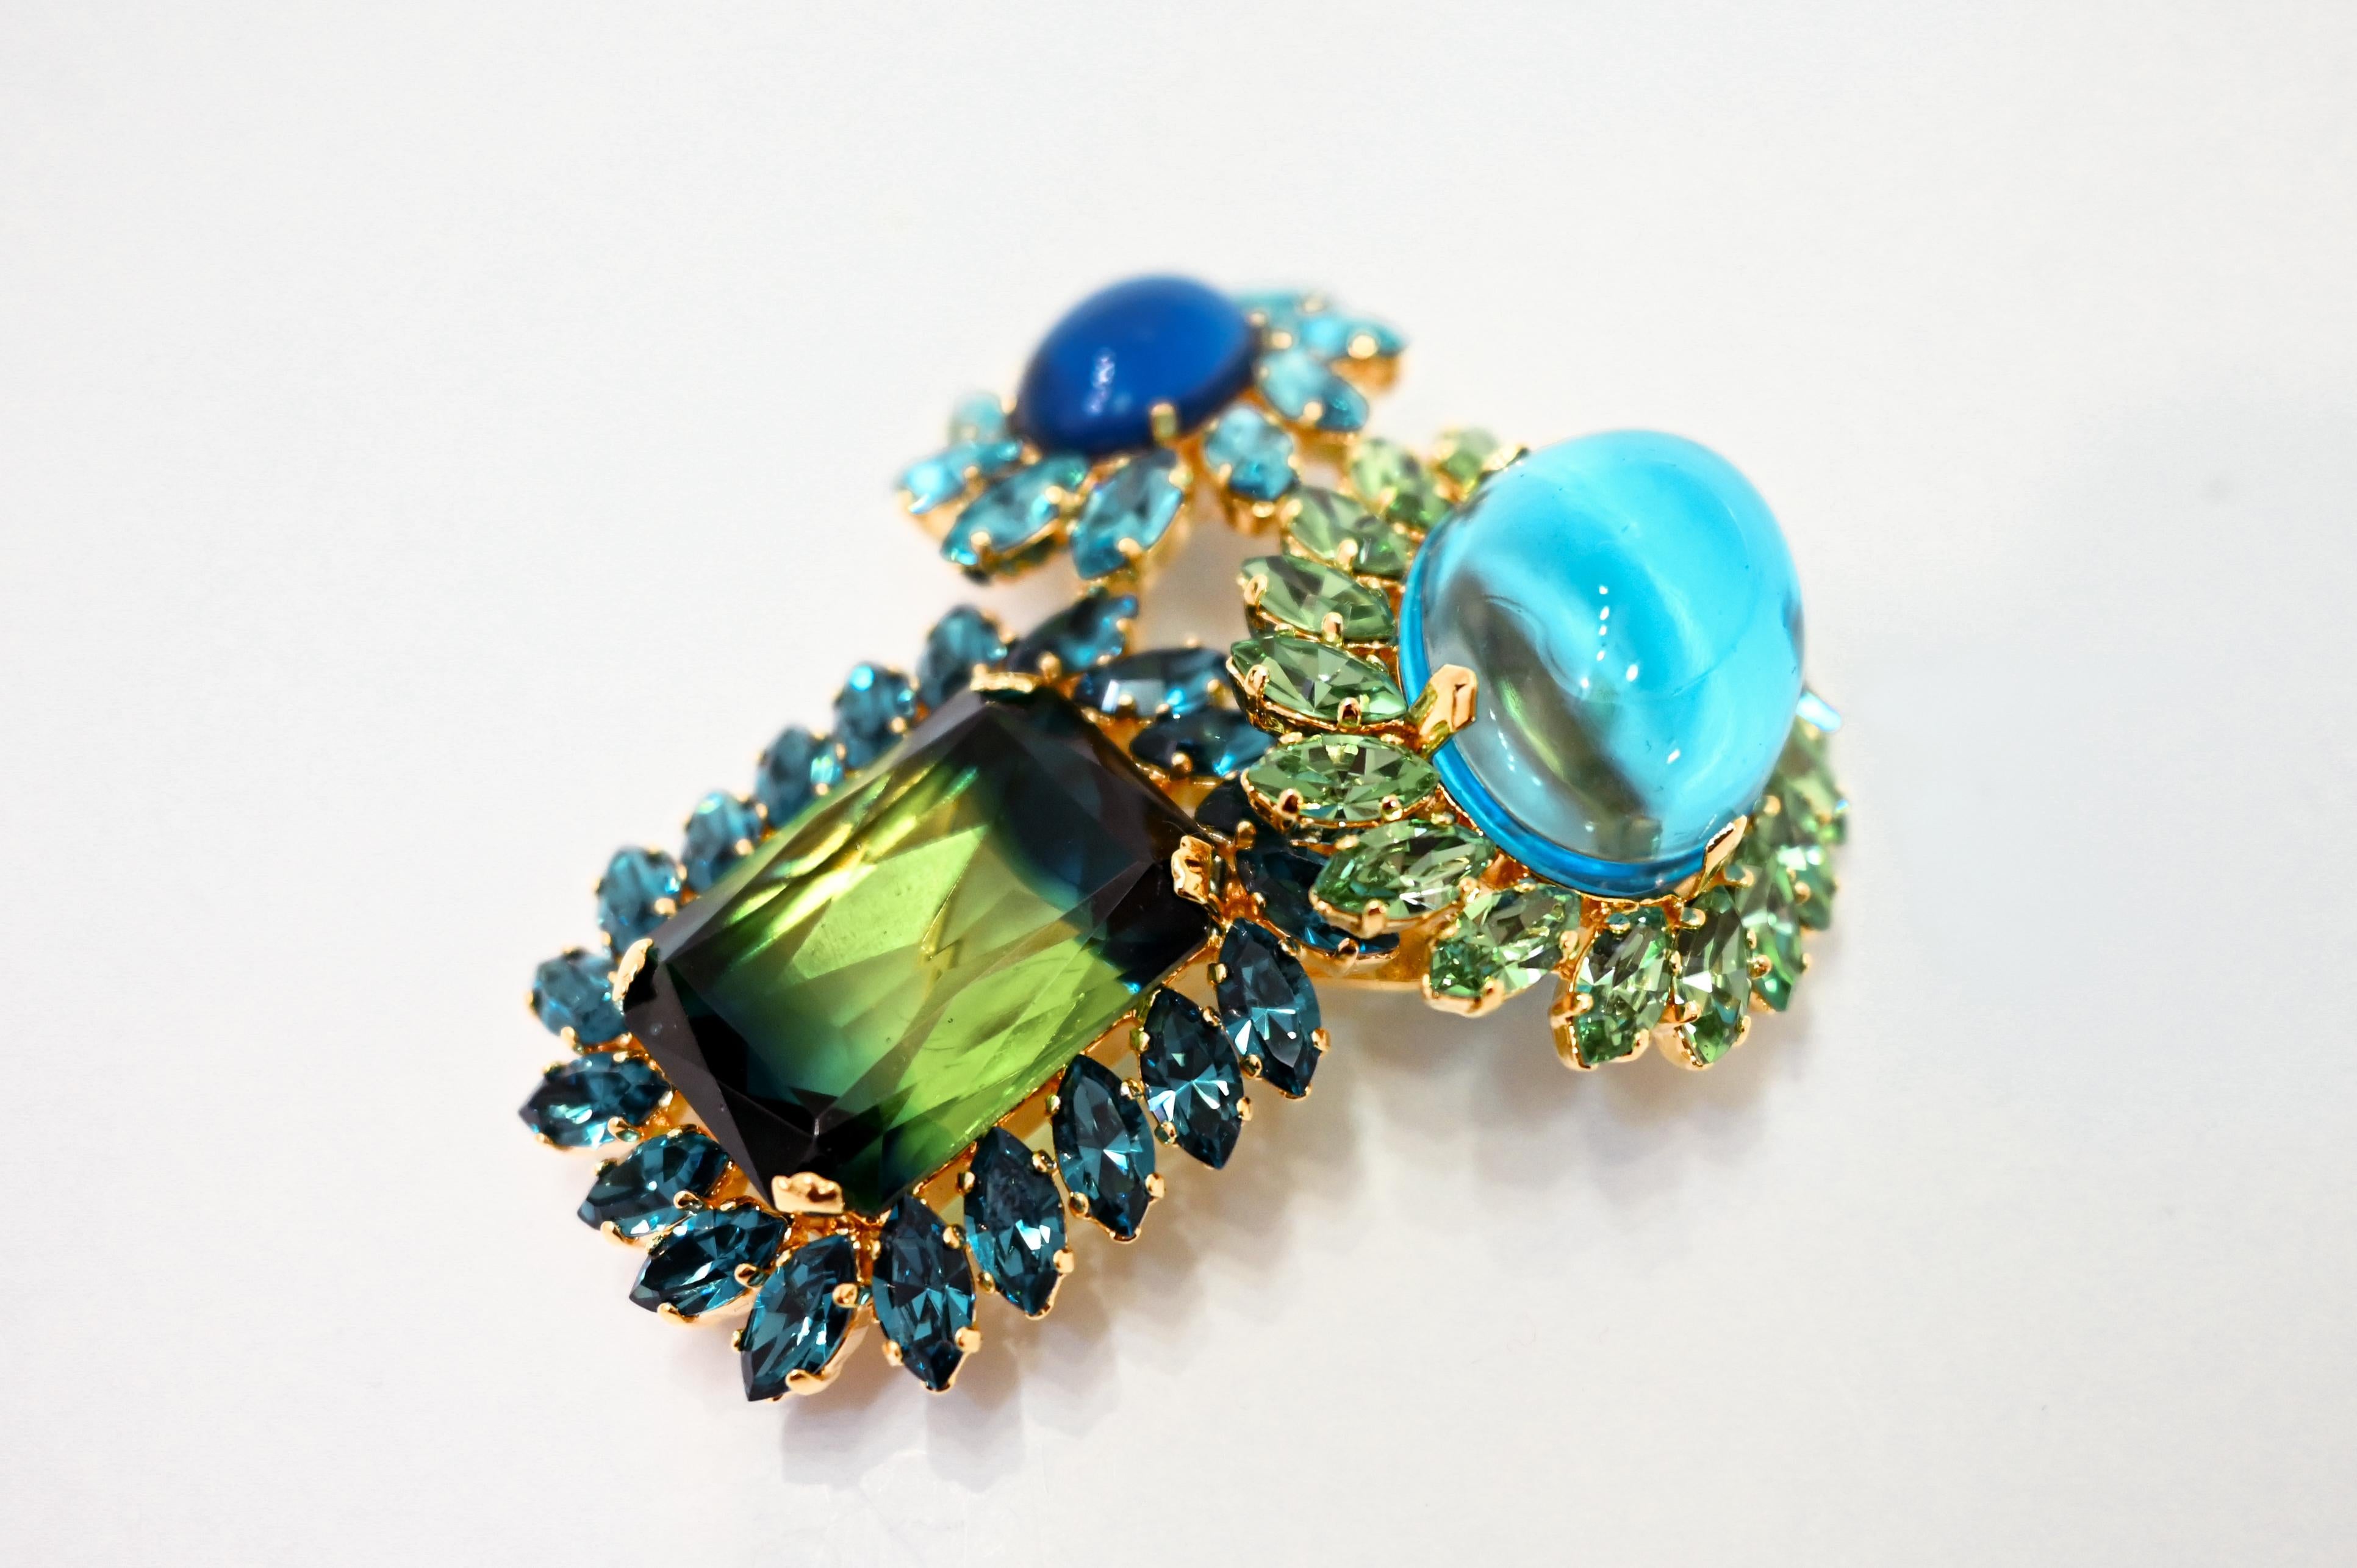 Swarovski-Kristalle in einer schönen Mischung aus Blau- und Grüntönen. 1 von 2 Stücken speziell für Isabelle K Jewelry aus dem Atelier von Philippe Ferrandis in Paris. 
Philippe Ferrandis ist seit 1986 als Parurier in Paris tätig. Er kreiert zwei